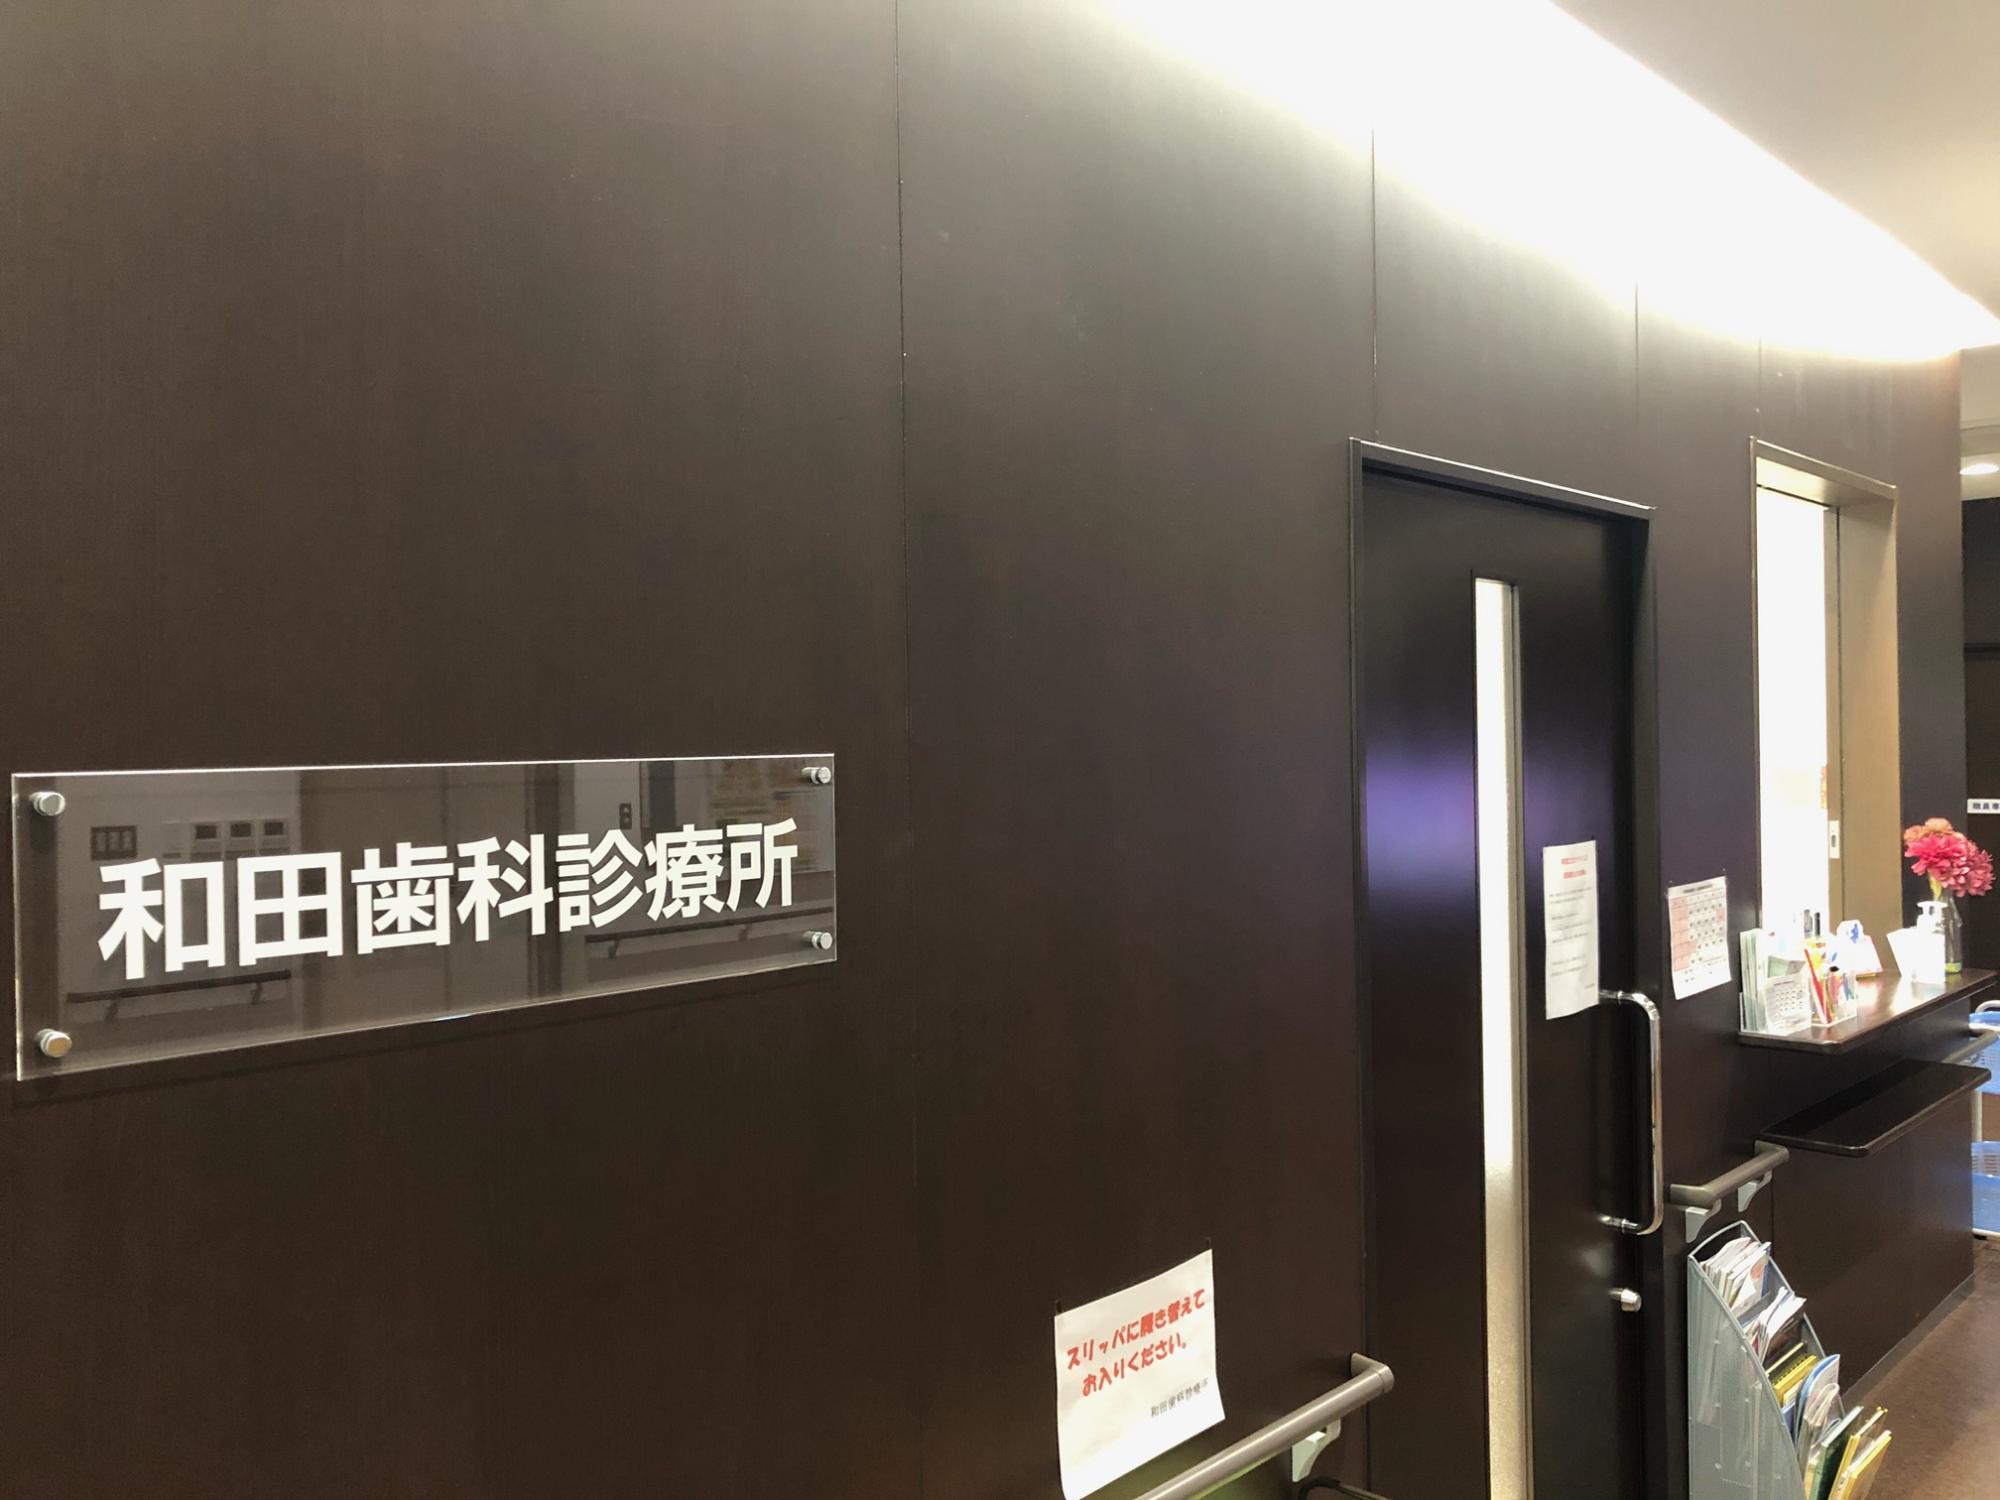 木目調の茶色の壁に和田歯科診療所と書かれたアクリルプレートが設置されており、ドアと受付窓口がある和田歯科診療所の待合室の写真